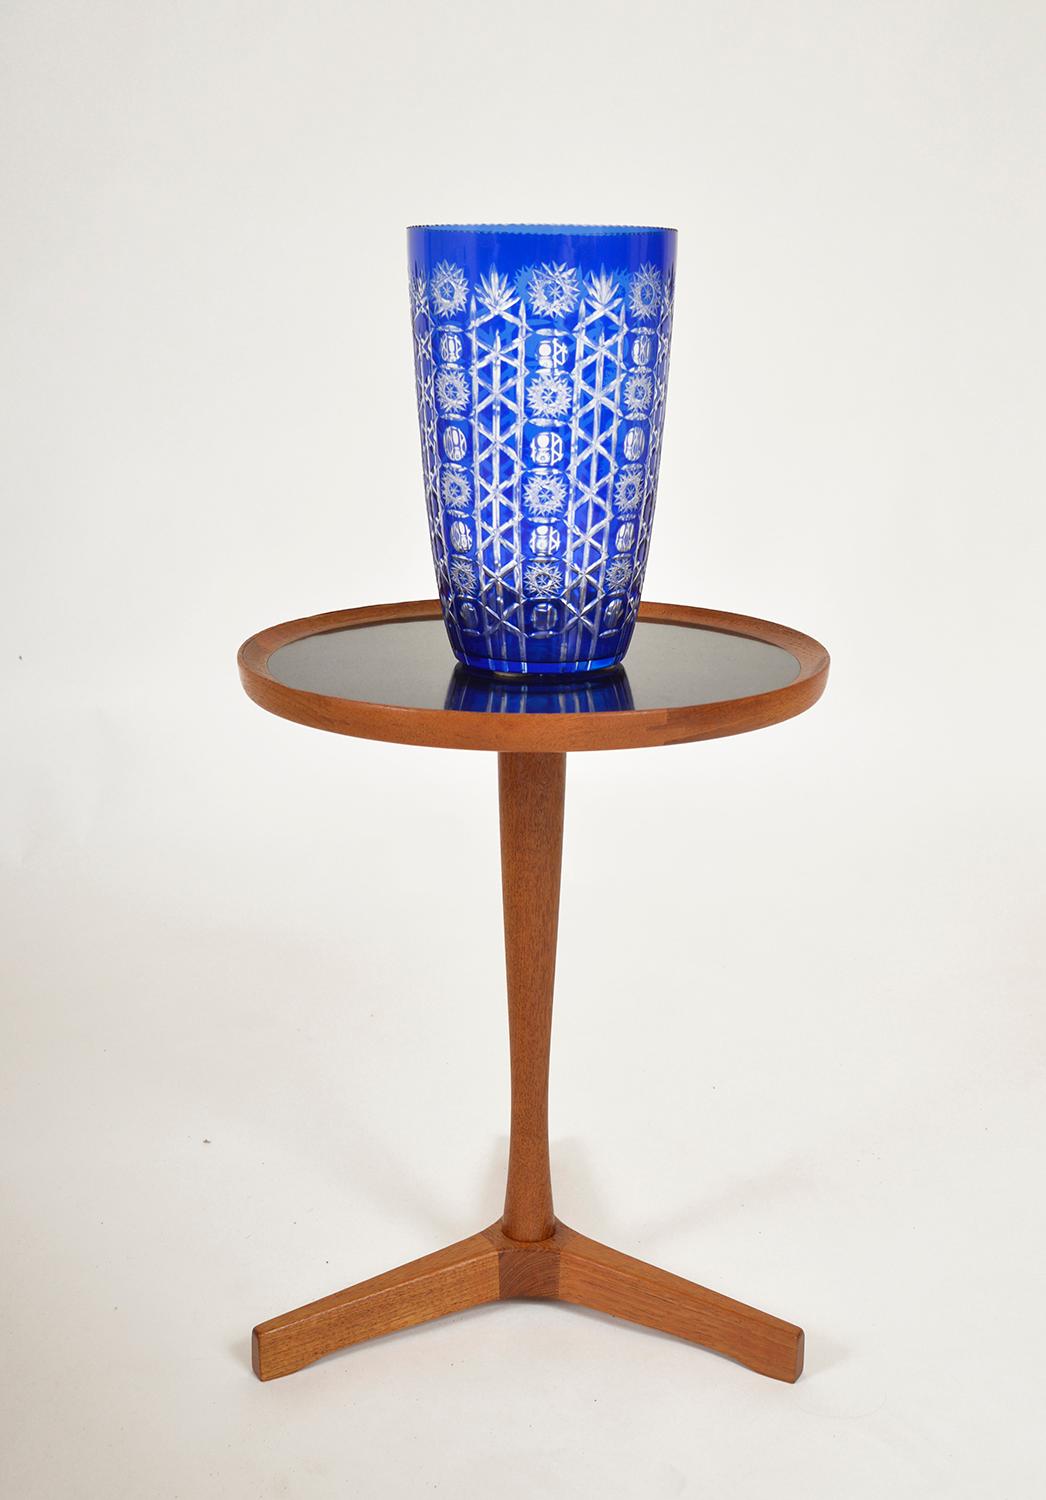 large cobalt blue glass vase